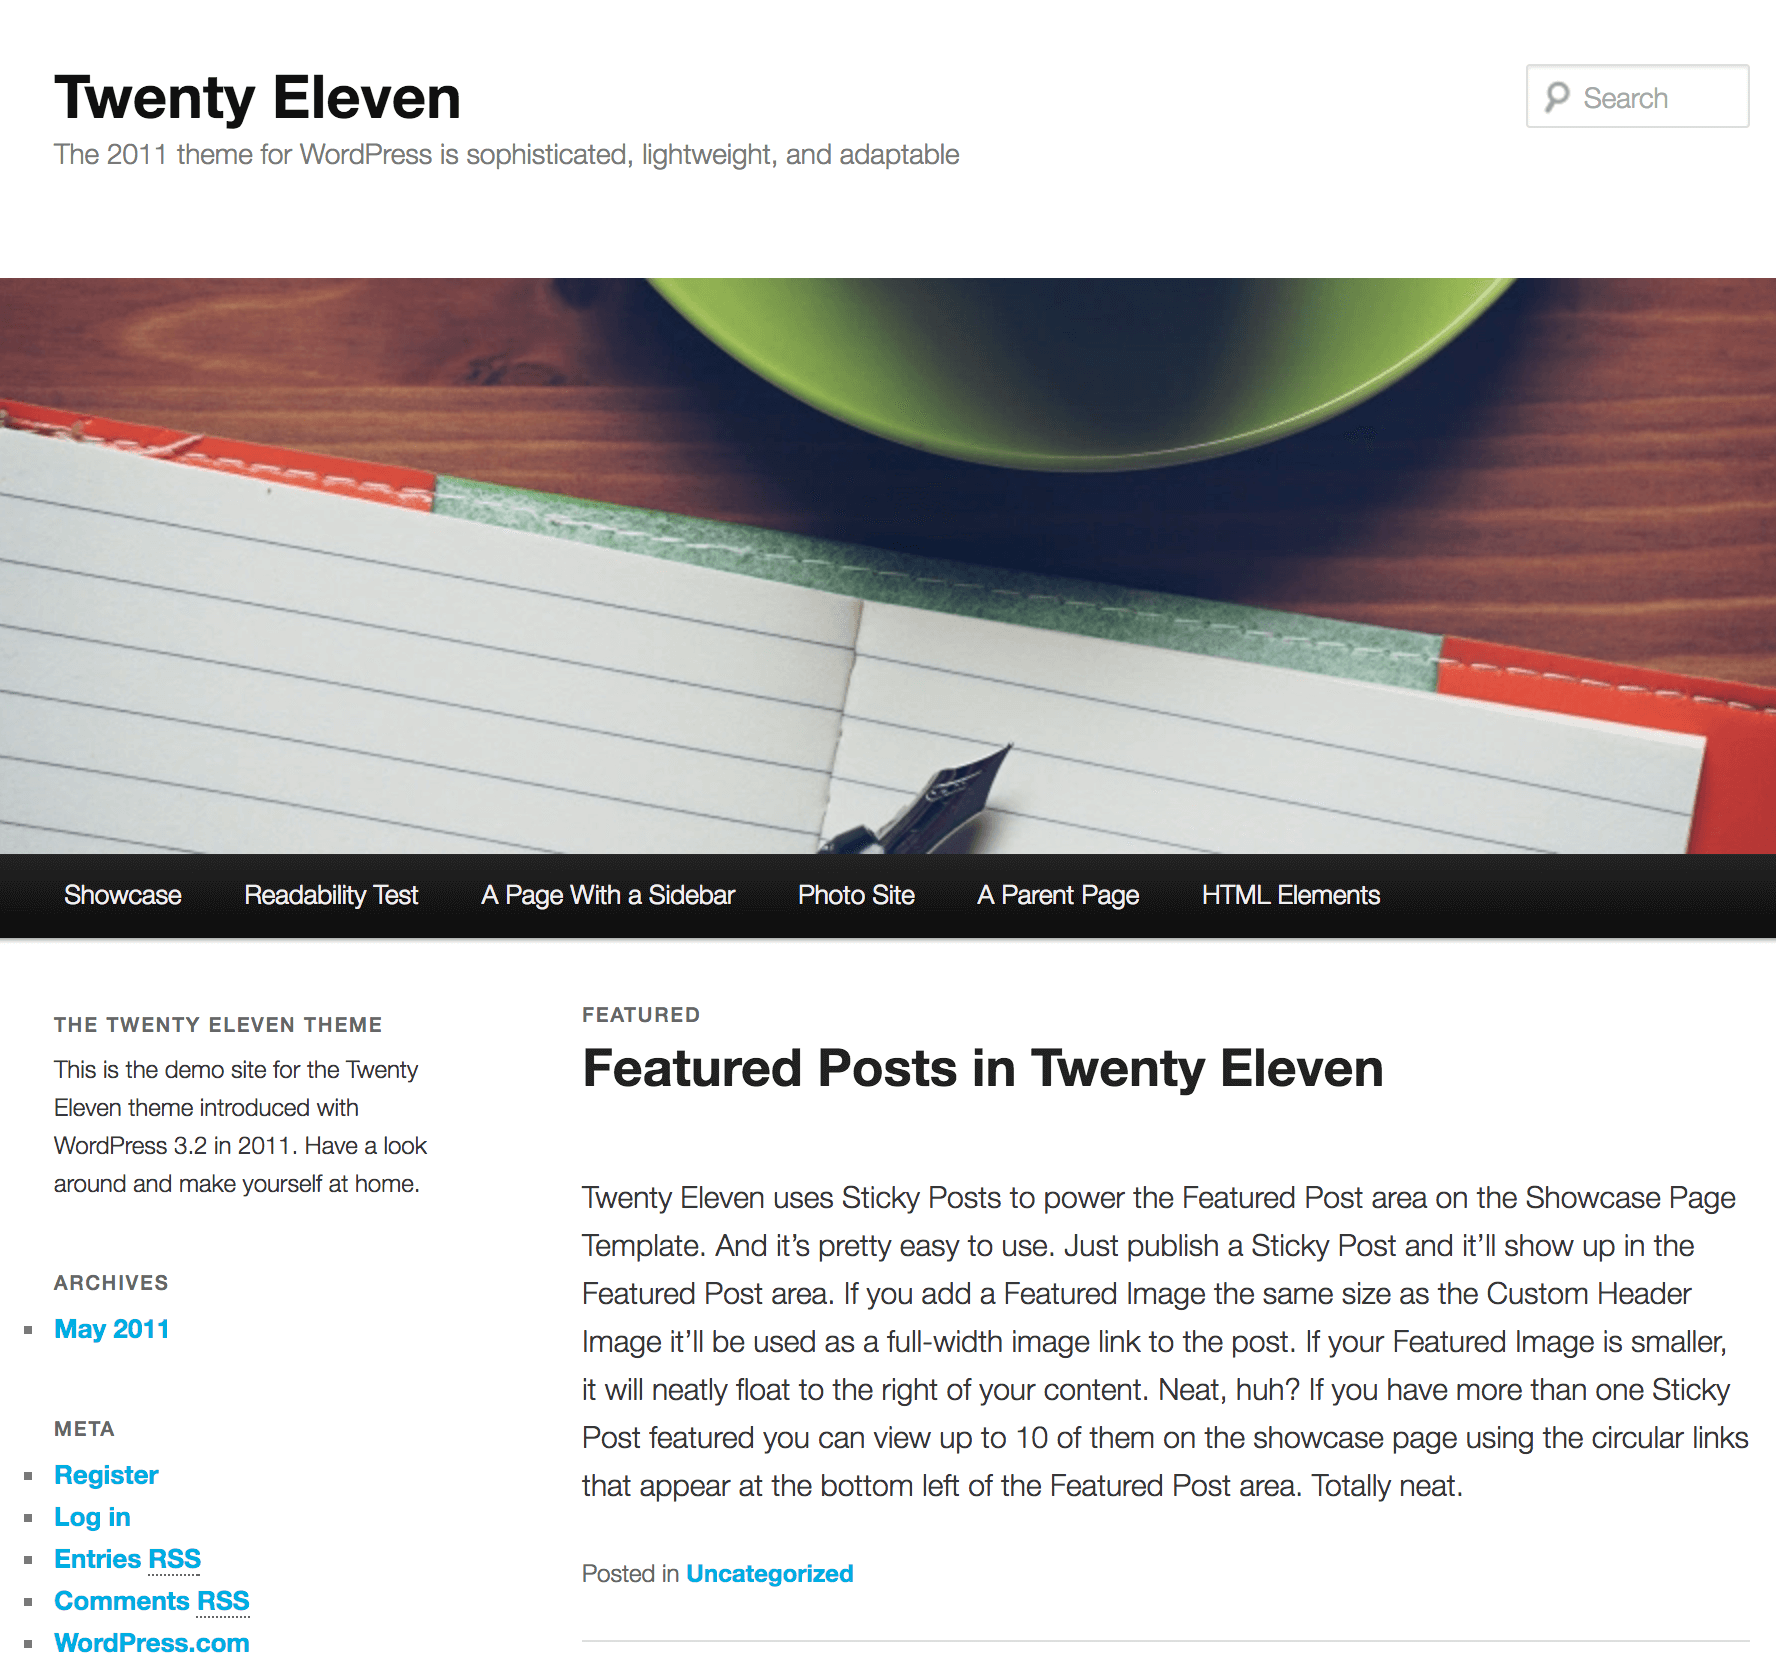 The Twenty Eleven theme.